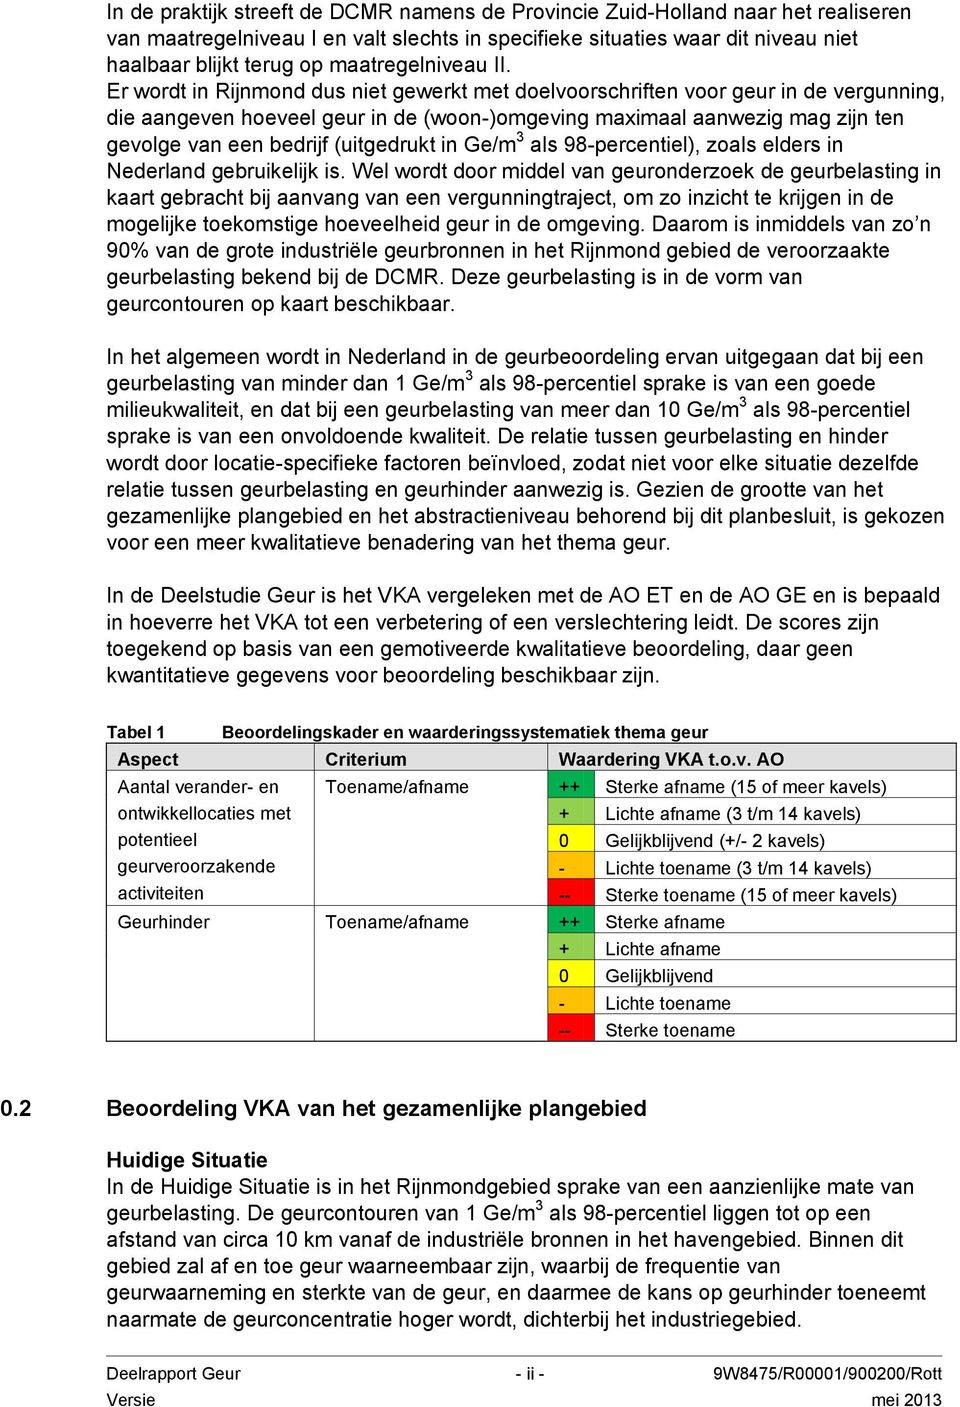 Er wordt in Rijnmond dus niet gewerkt met doelvoorschriften voor geur in de vergunning, die aangeven hoeveel geur in de (woon-)omgeving maximaal aanwezig mag zijn ten gevolge van een bedrijf